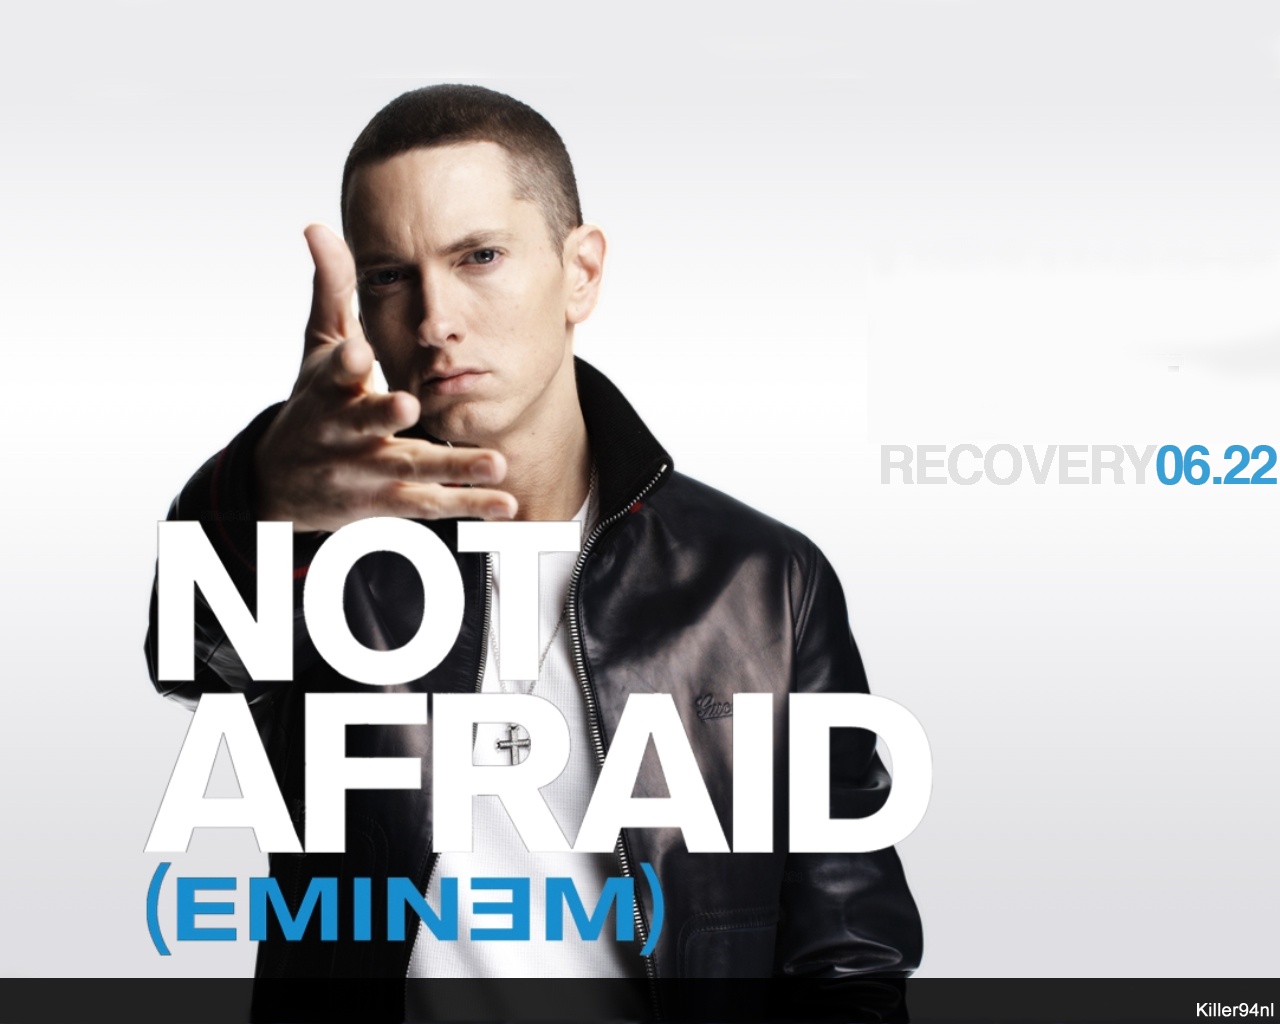 http://2.bp.blogspot.com/_7ub7OOBg4Xc/TVG65Mi5frI/AAAAAAAAAqE/k0p2MfhzZgs/s1600/Eminem_wallpaper01.jpg